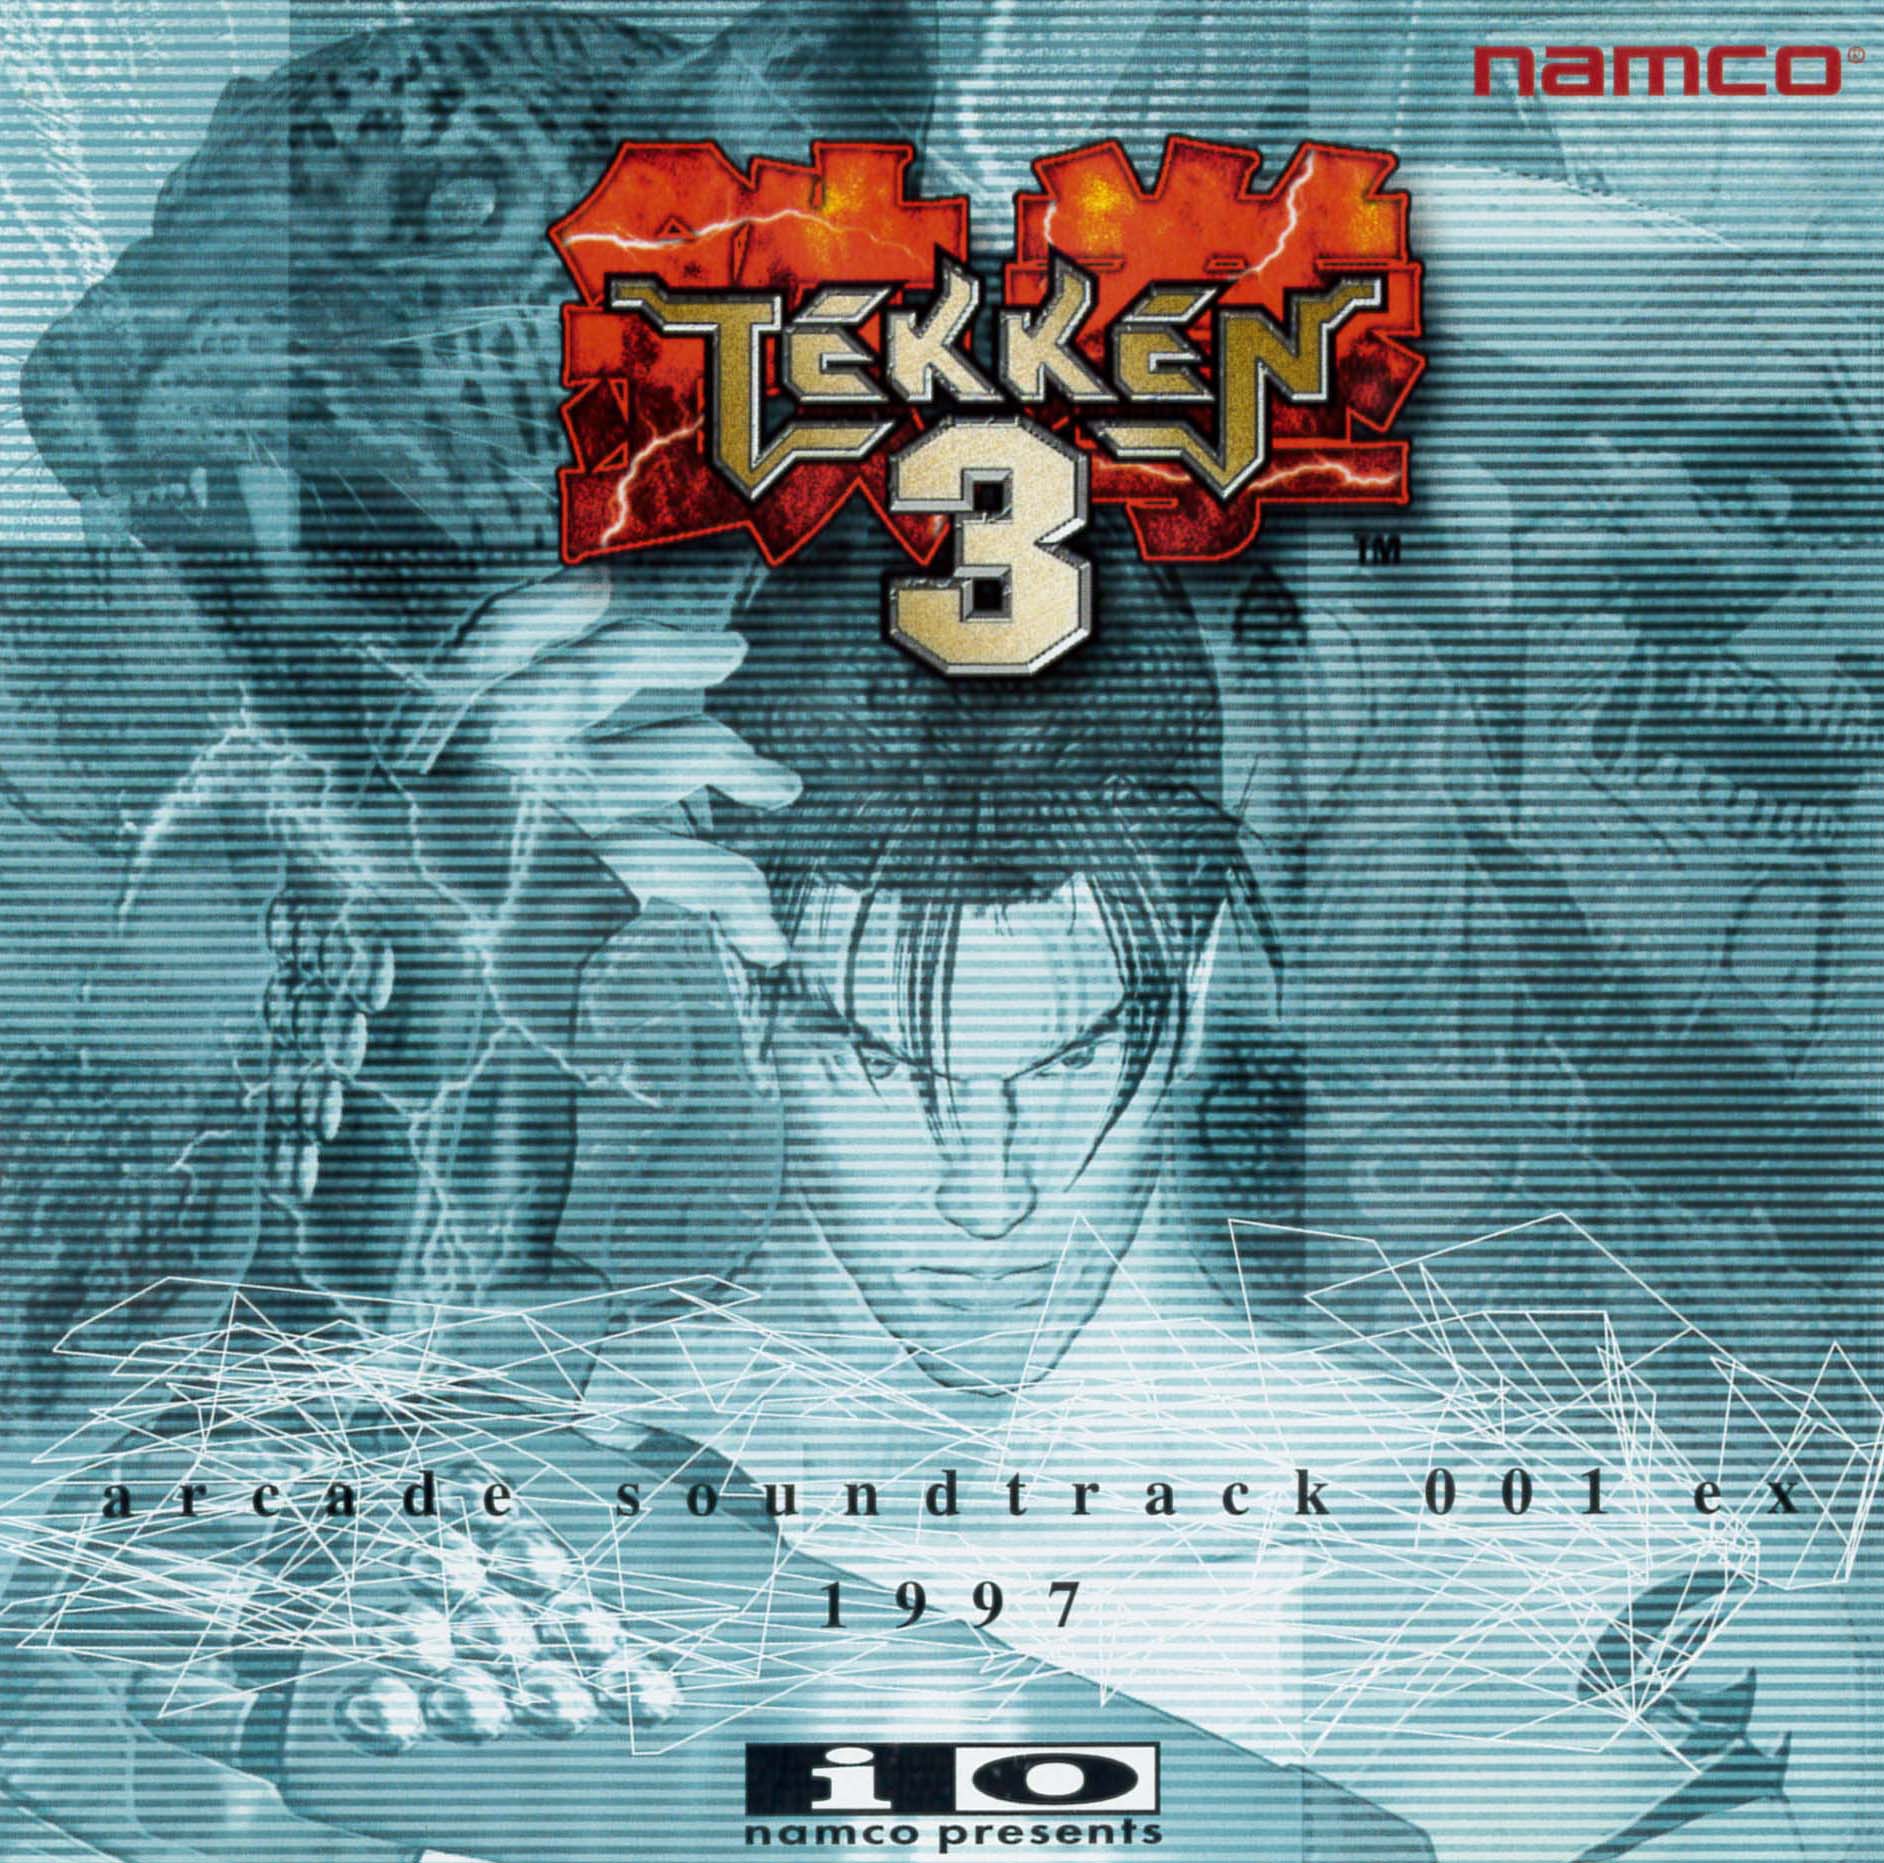 Với Tekken 3 arcade soundtrack, bạn sẽ được trải nghiệm những giai điệu của Tekken 3 như thể bạn đang đứng trên một chiếc máy arcade thực sự. Được phát hành độc quyền trên các phòng game, qua thời gian, Tekken 3 arcade soundtrack đã trở thành một hiện tượng âm nhạc của thế giới game.